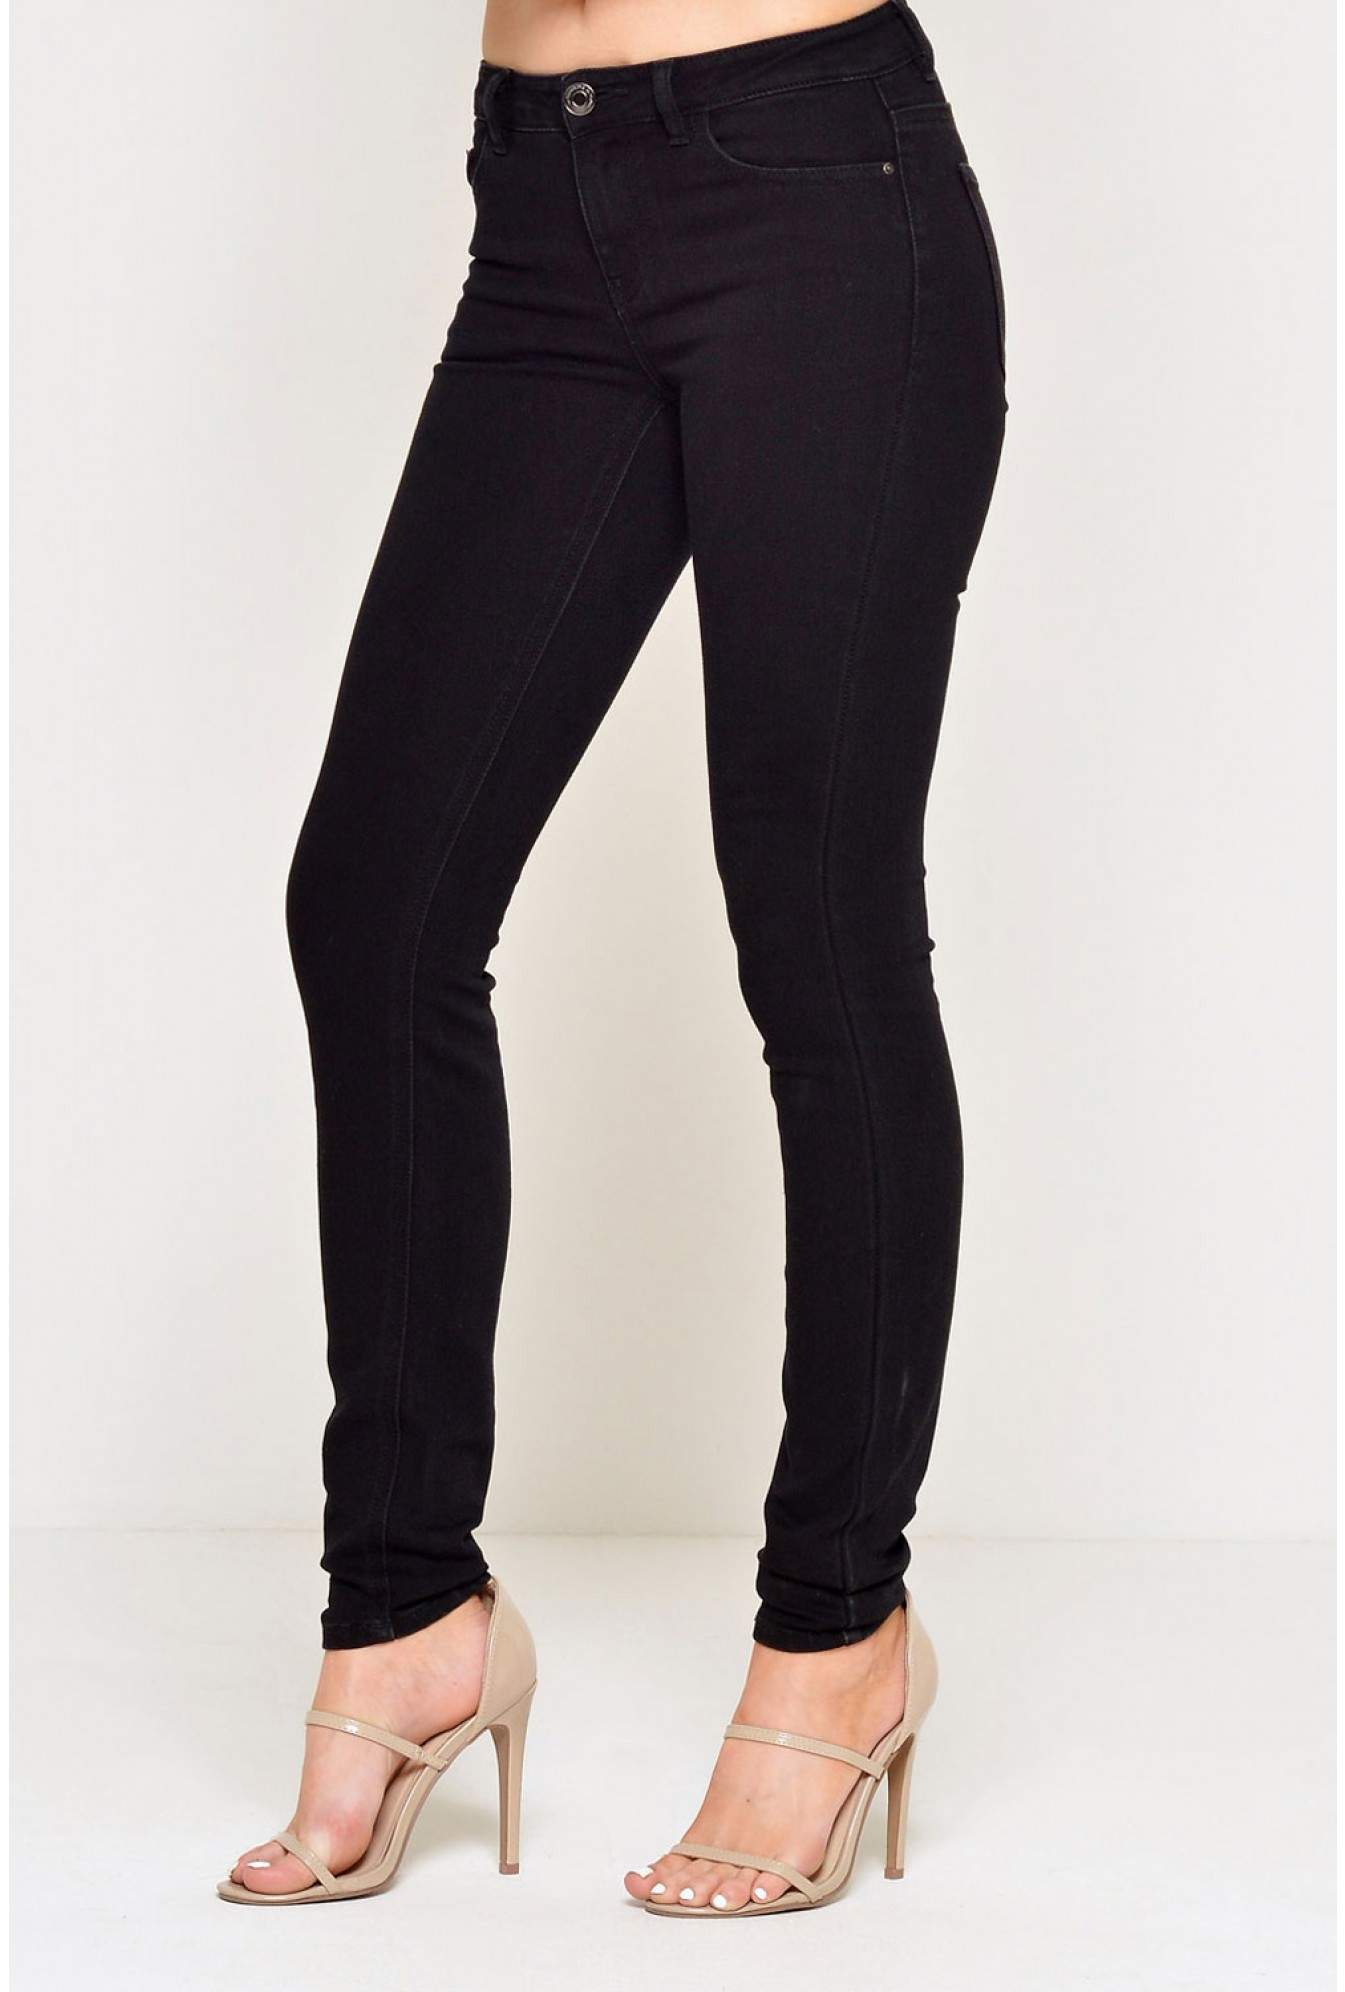 JDY Skinny Regular Low Holly Jeans in Black | iCLOTHING